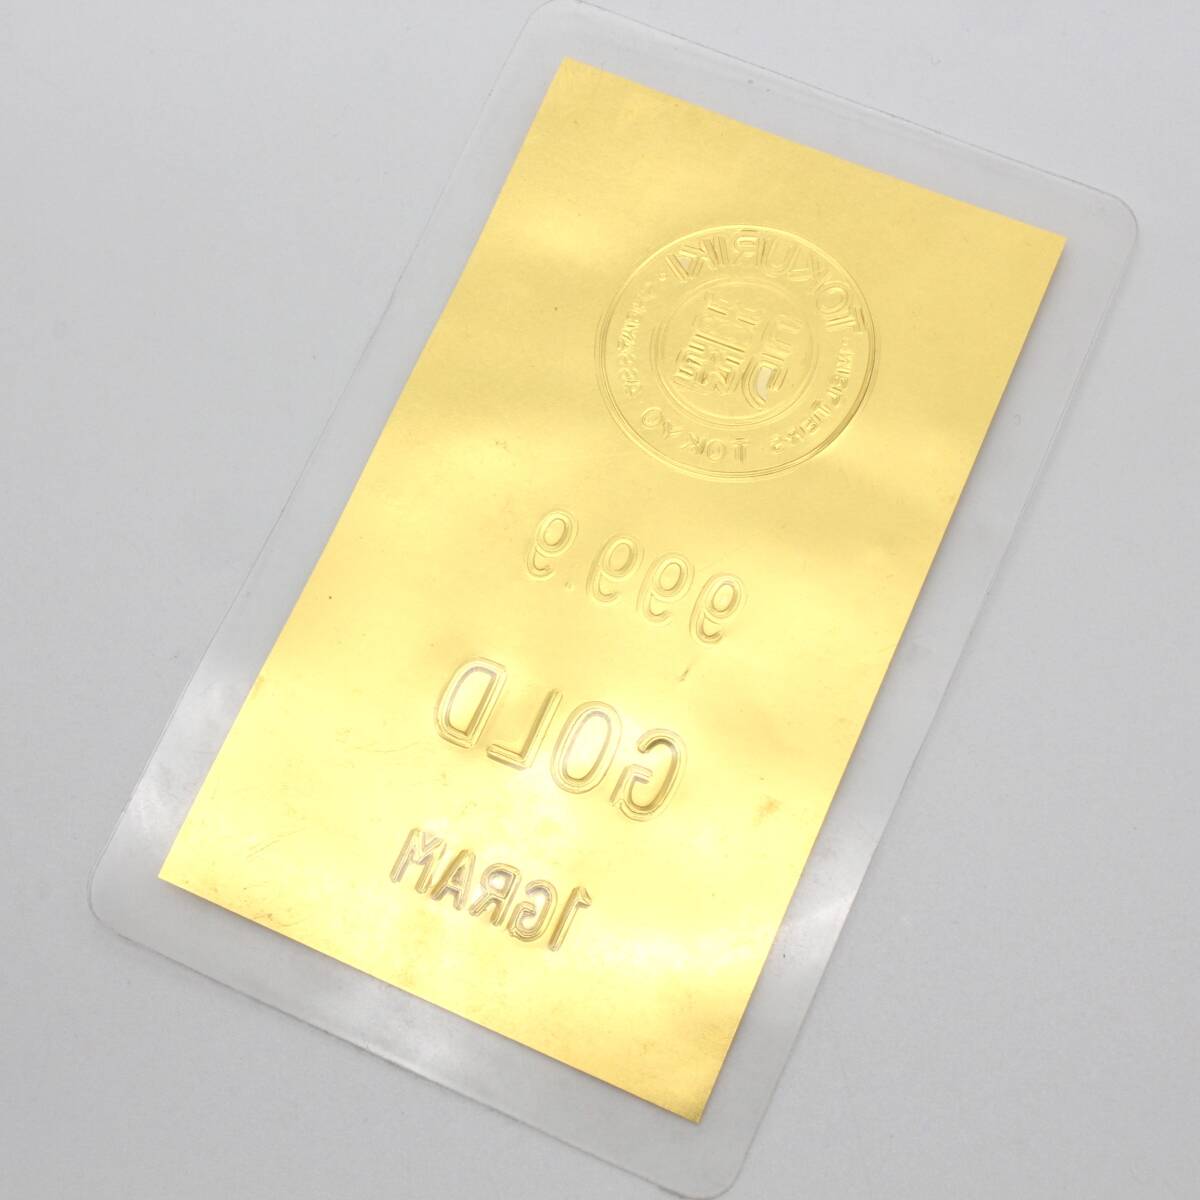 【純金カード】 徳力 TOKURIKI 1g 999.9 ラミネート GOLD ゴールド 24金 K24 総重量2.6g の画像7